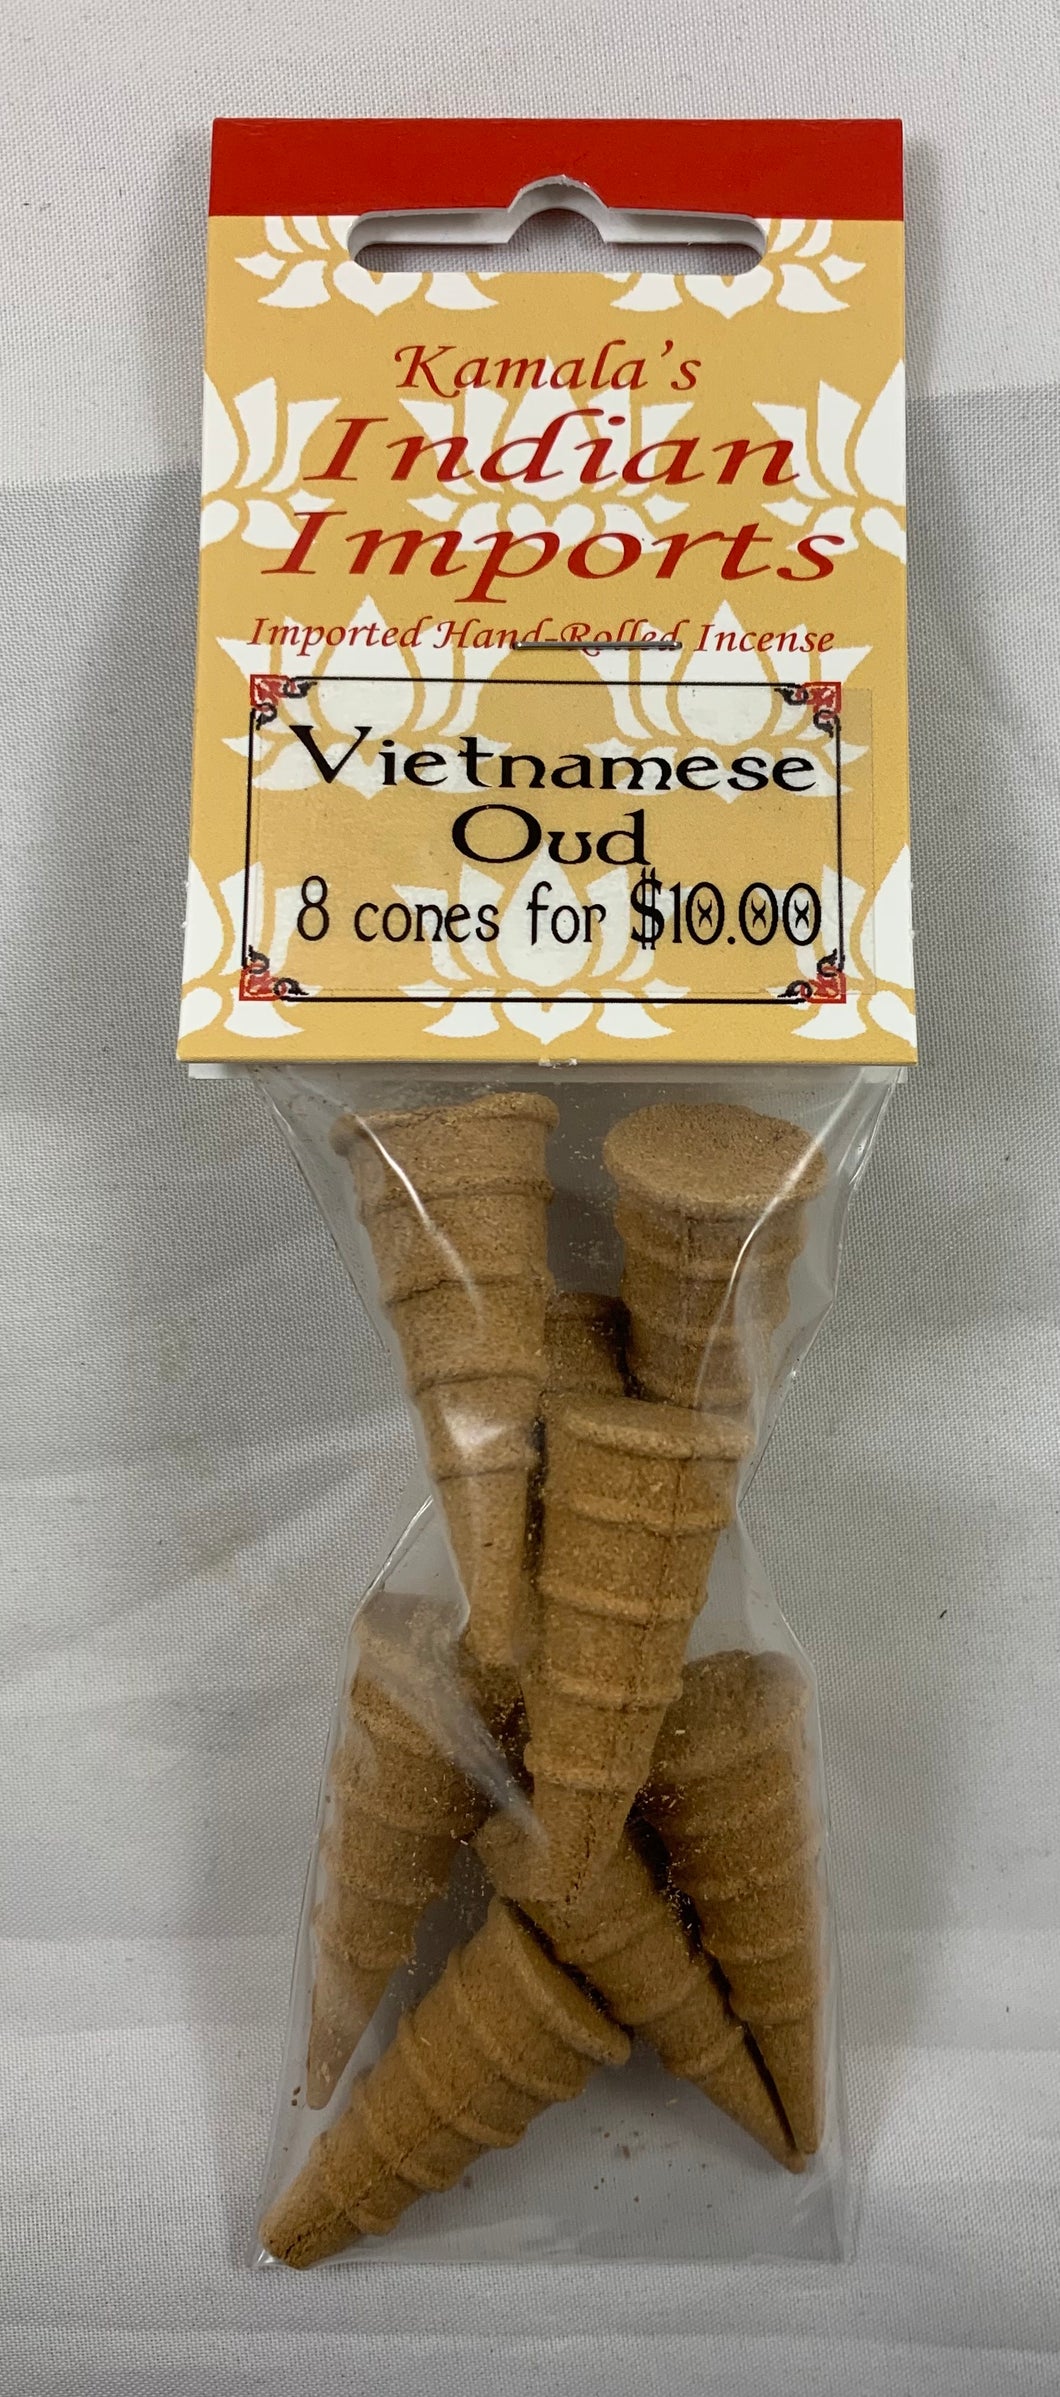 Vietnamese Oud incense cones